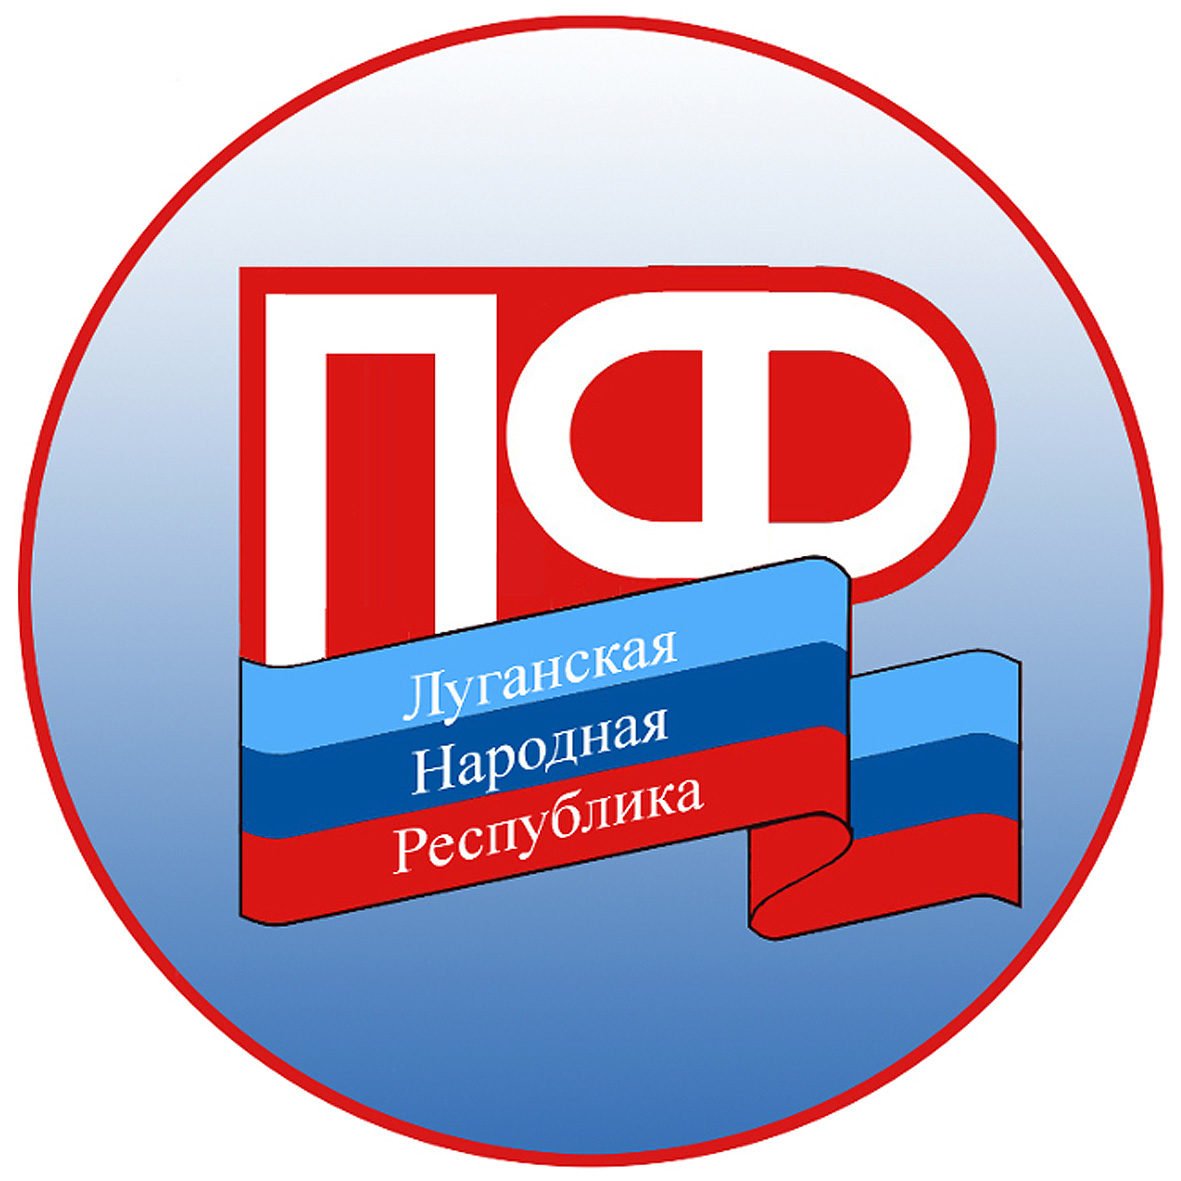 Управление ПФ ЛНР в Жовтневом районе Луганска сообщает о приостановлении приема граждан и проверок